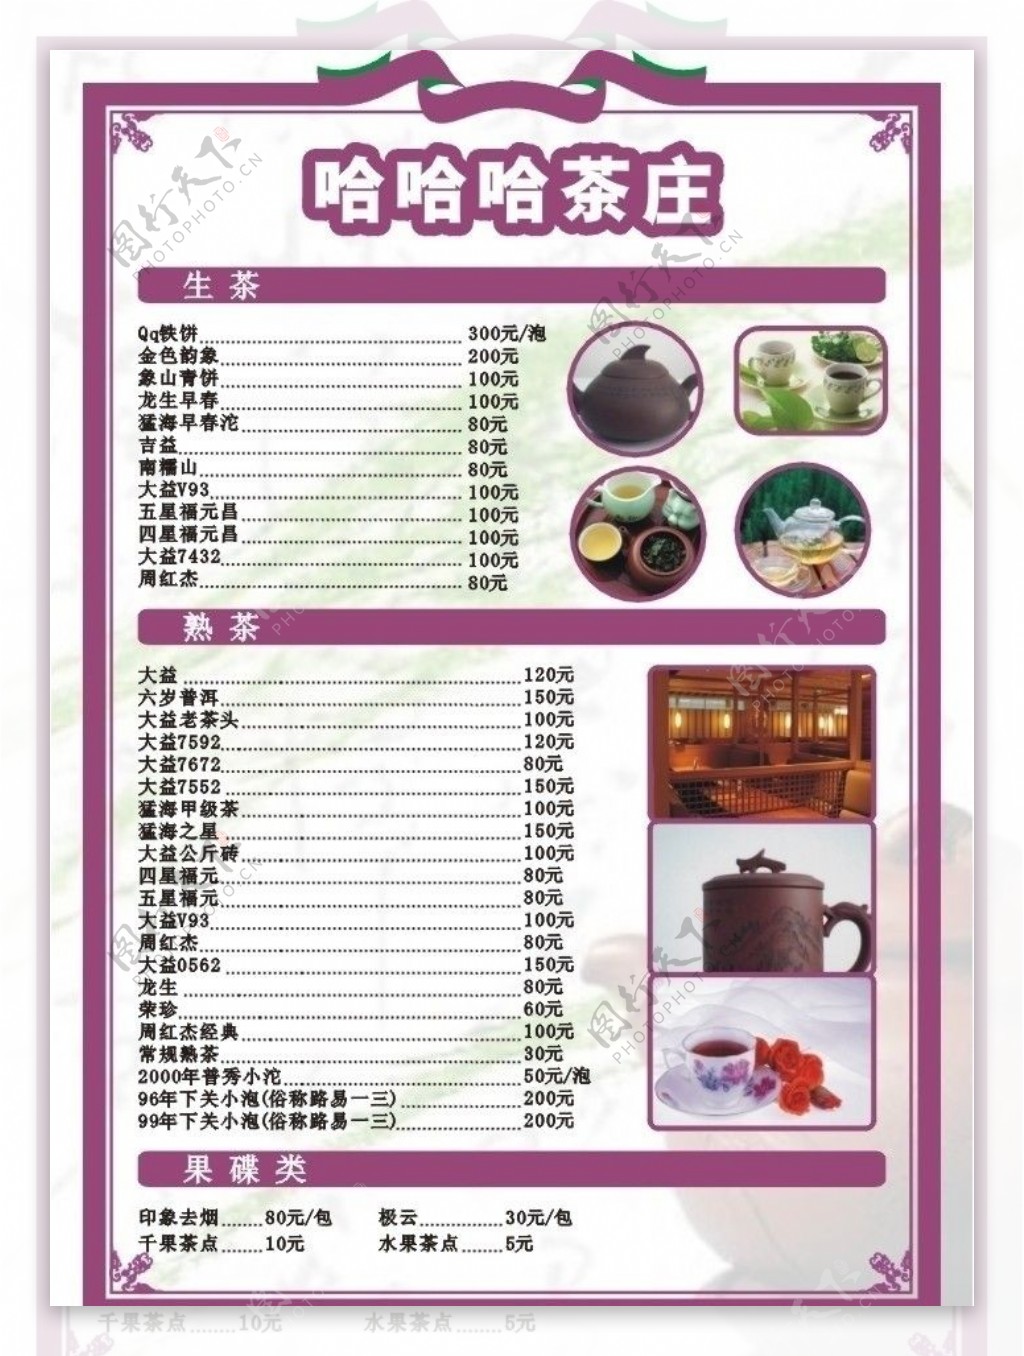 茶荘菜单图片